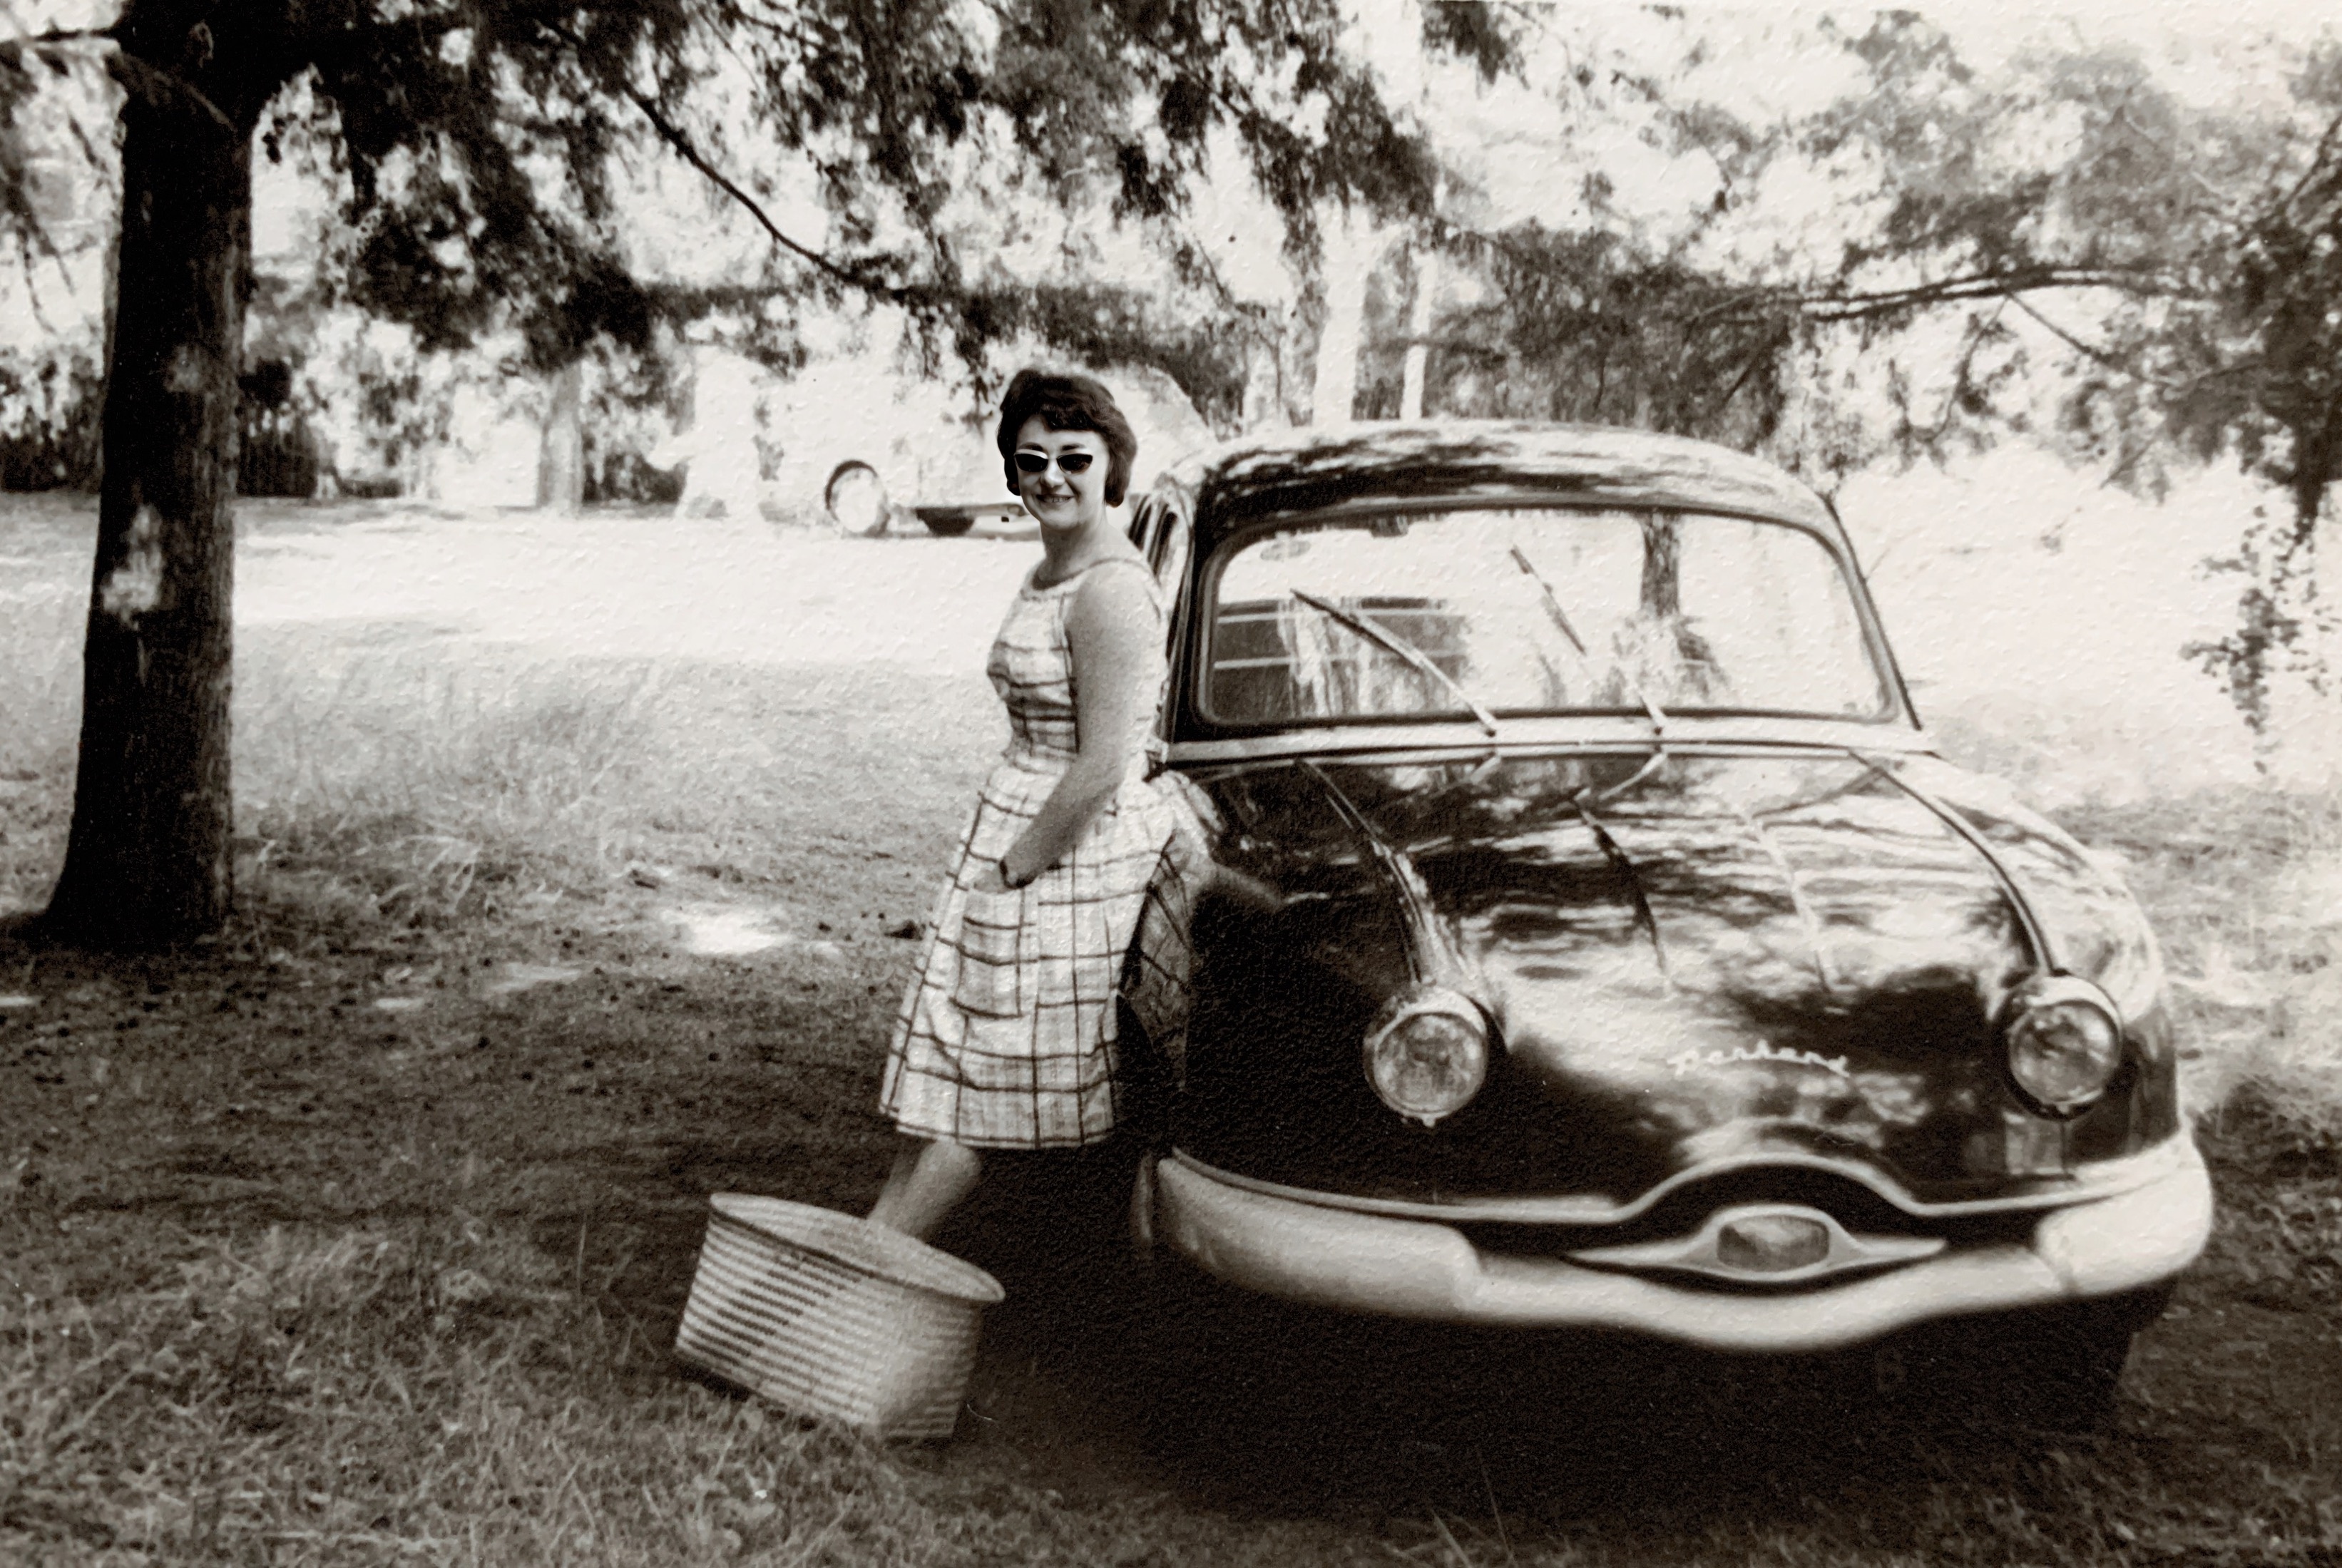 1962, à Madascar. (Antsirabé), ma mère fière de sa Panhard. Une rare voiture circulant au milieu des zébus.